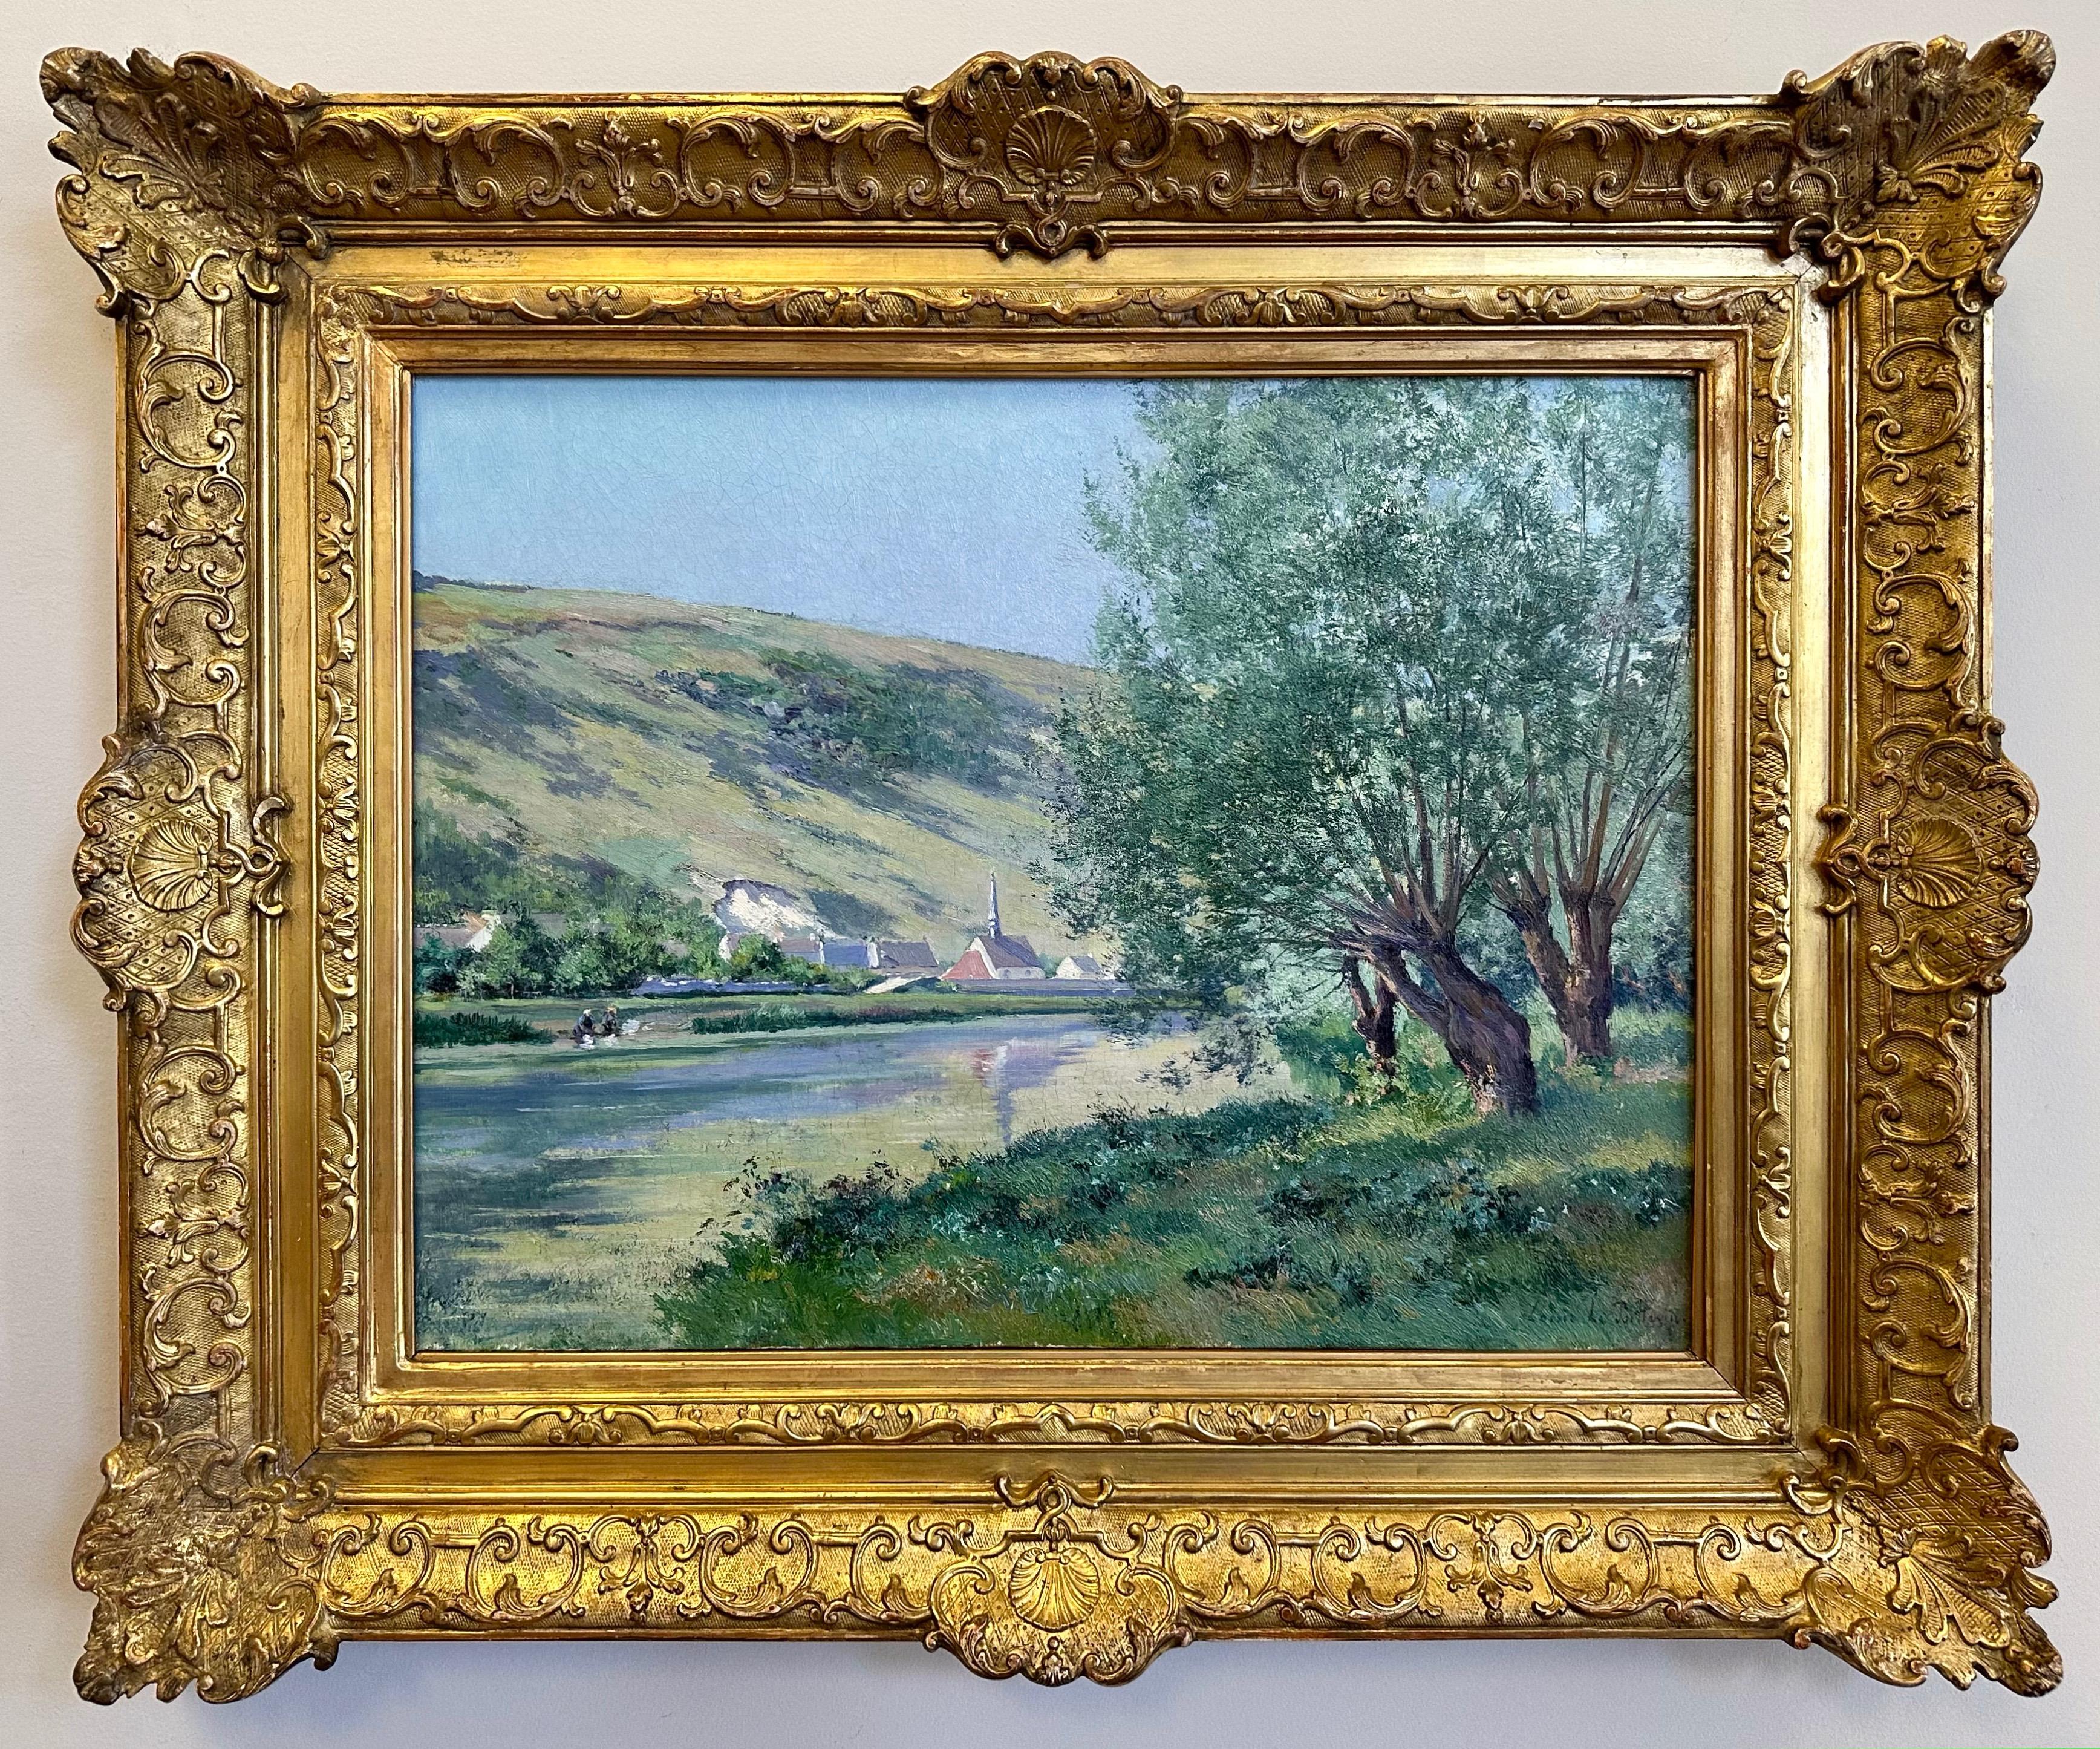 Une grande et belle peinture impressionniste en plein air vers 1880 d'un paysage fluvial par le célèbre artiste français Louis-Paul Le Poittevin, présentée dans son cadre d'origine en bois doré sculpté à la main.

Le cadre bucolique sous un ciel